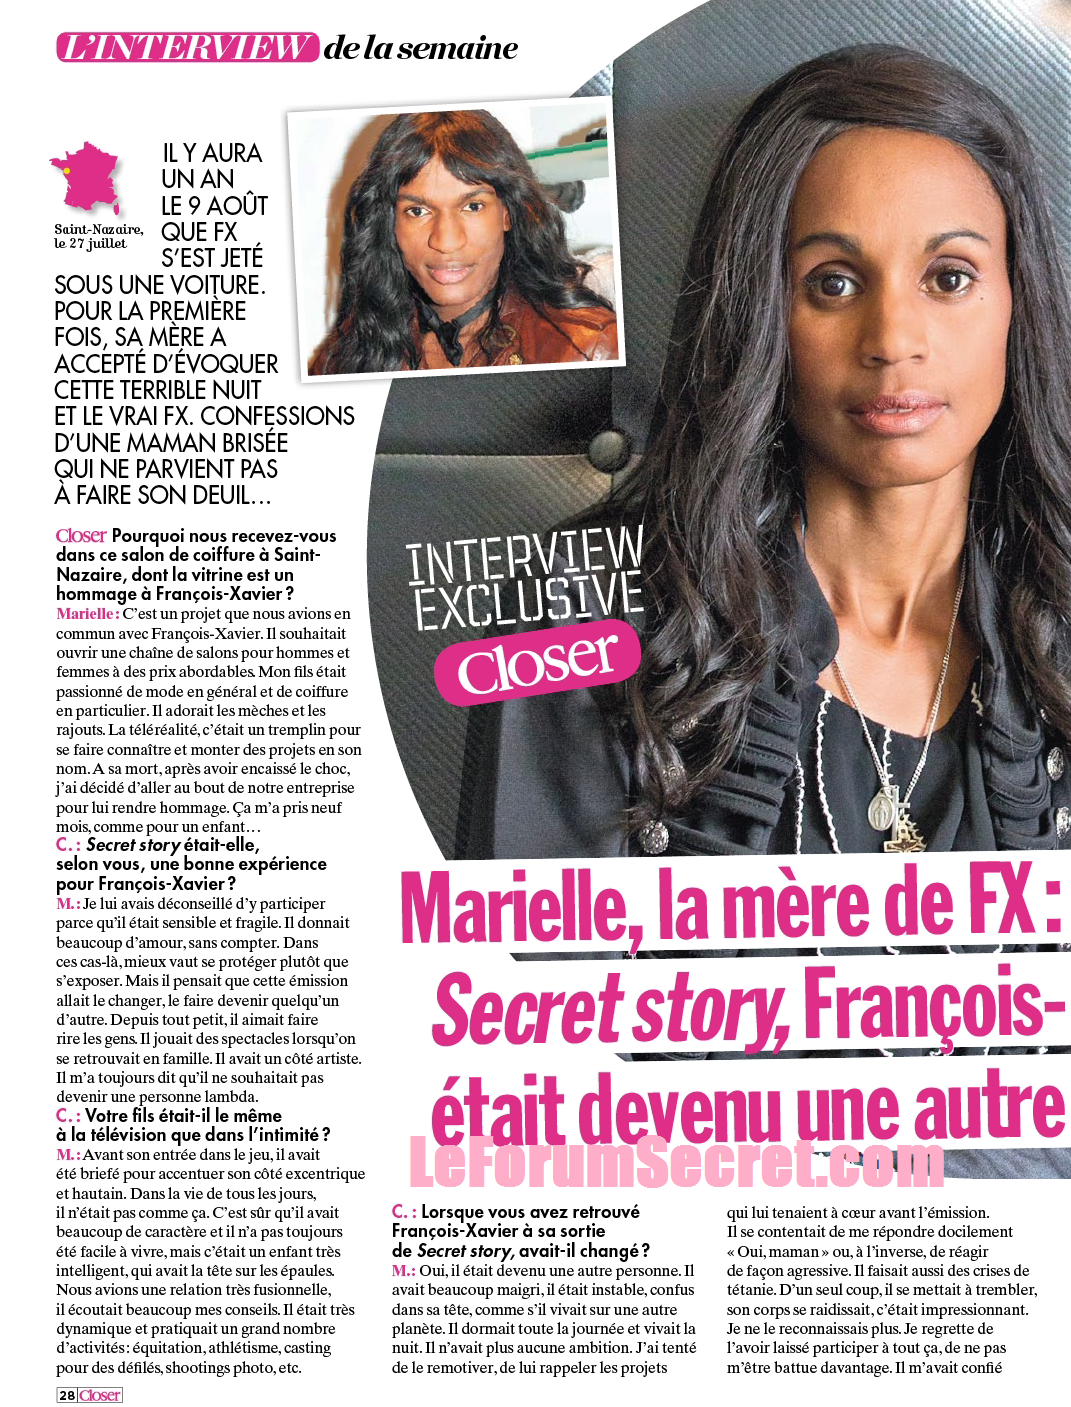 SCAN CLOSER / Marielle, la mère de Francois-Xavier "Après Secret Story, il était devenu une autre personne !" BNG9c